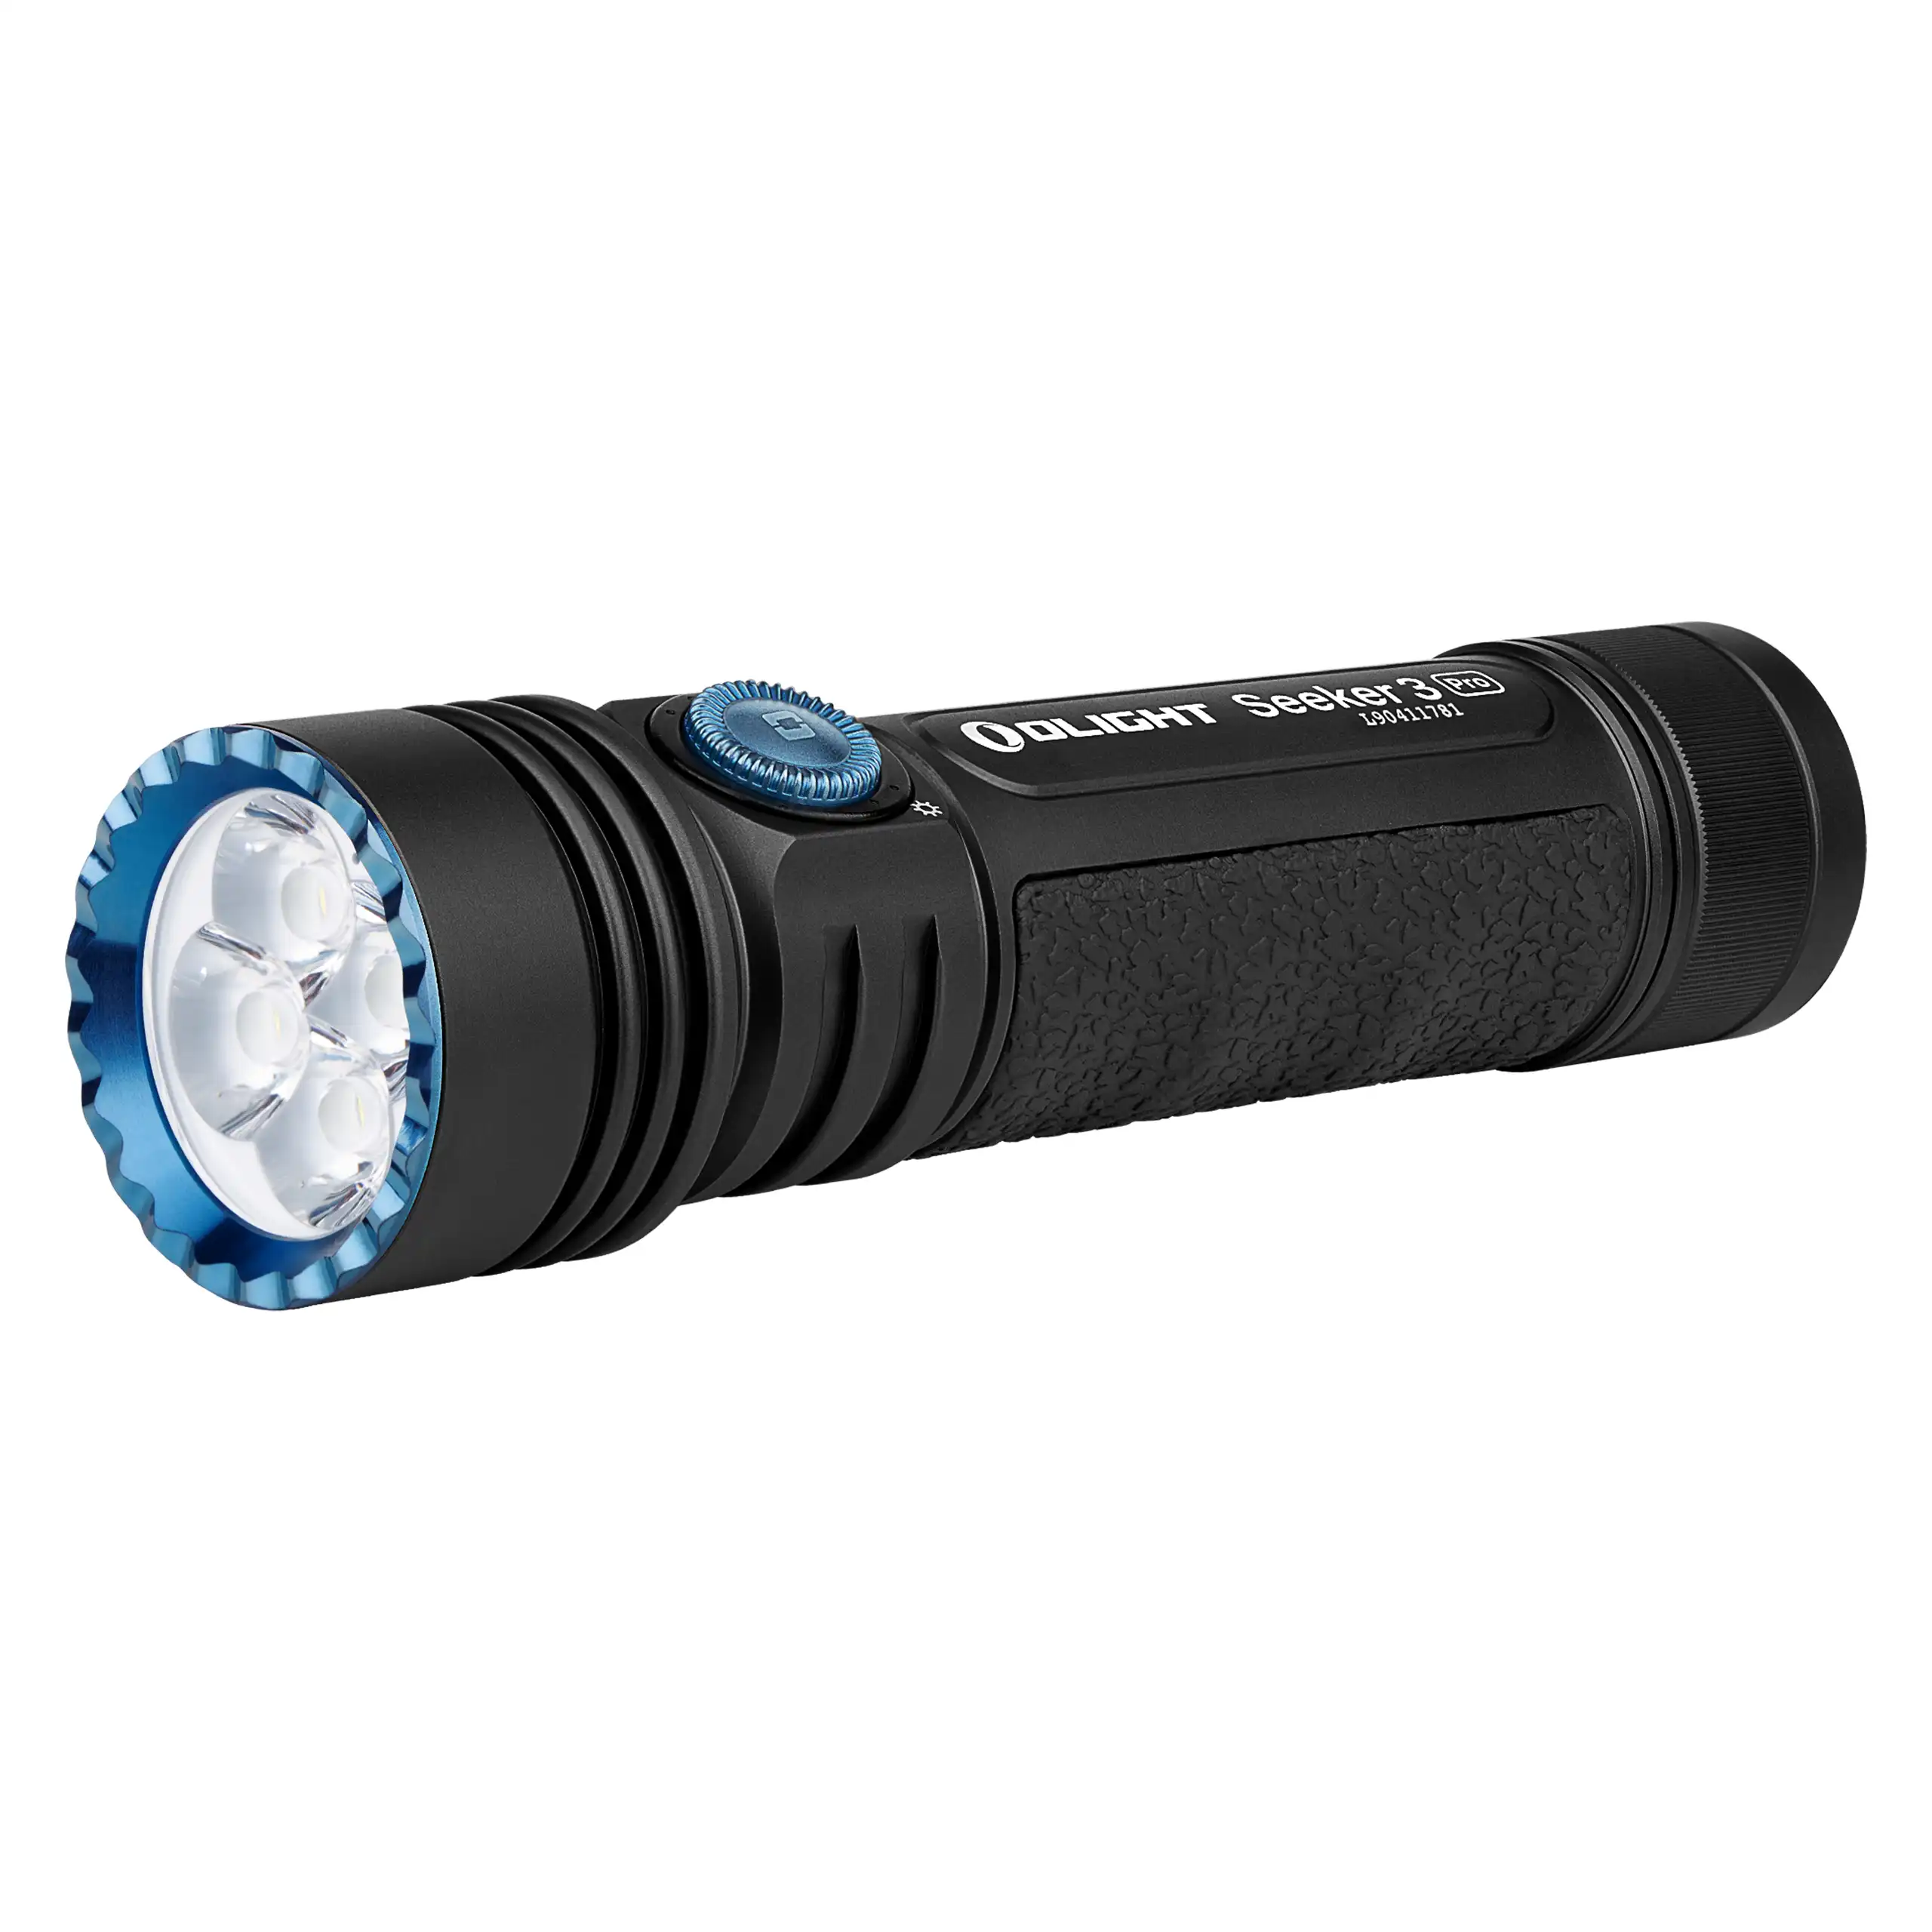 Seeker 3 Pro Taschenlampe 4200 Lumen Olight